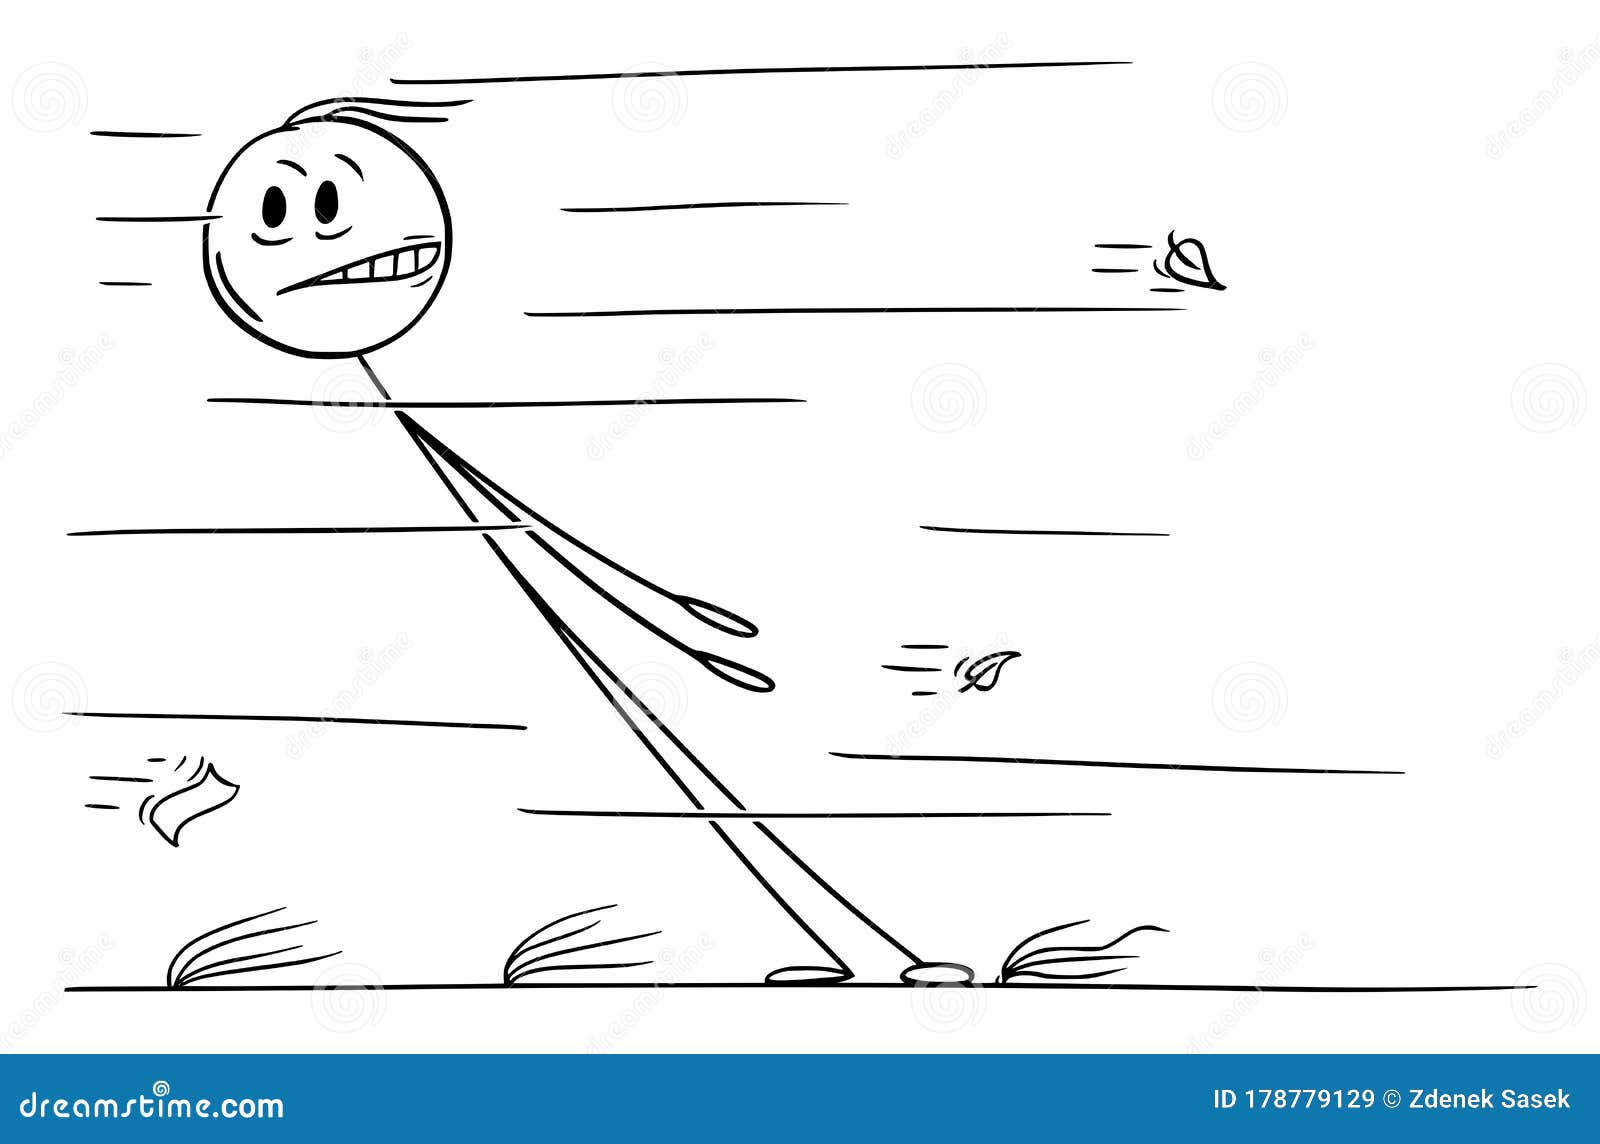  cartoon  of man facing strong wind blows